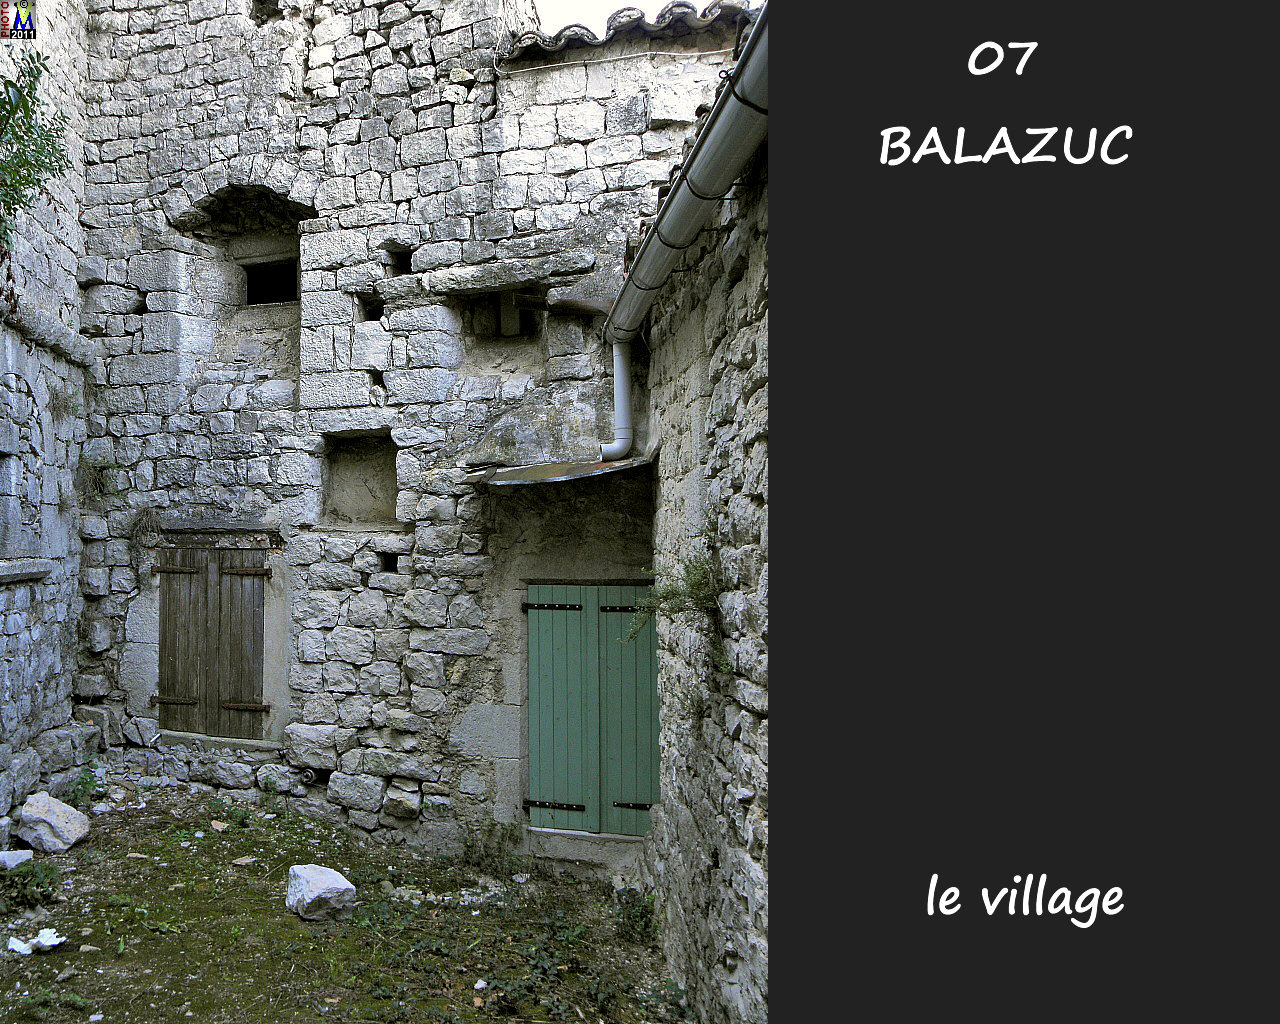 07BALAZUC_village_170.jpg